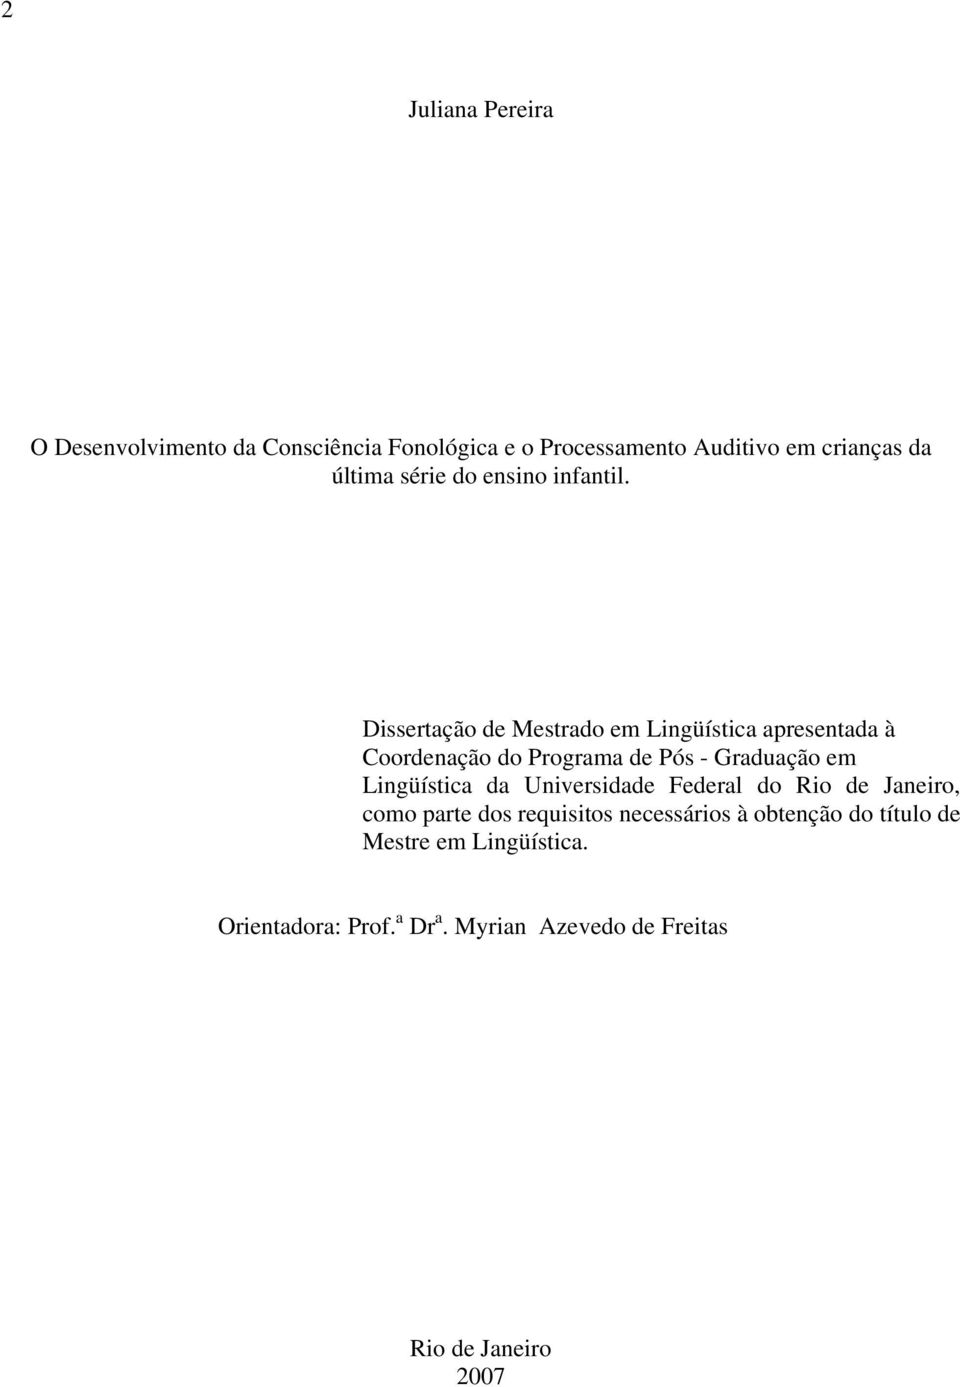 Dissertação de Mestrado em Lingüística apresentada à Coordenação do Programa de Pós - Graduação em Lingüística